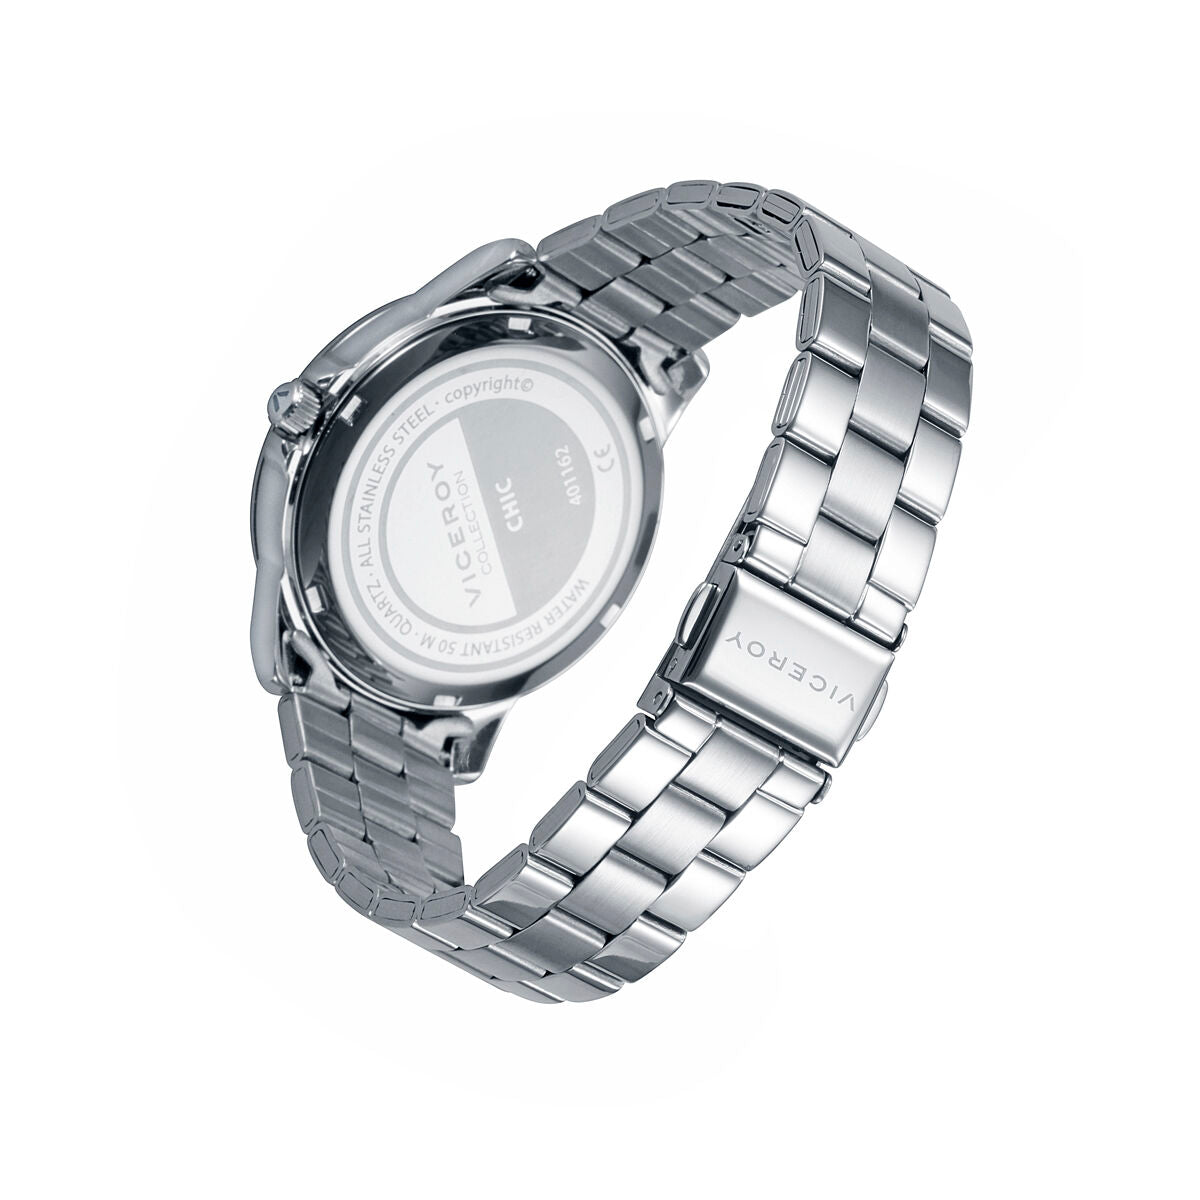 Horloge Dames Viceroy 401162-33 (Ø 37 mm)